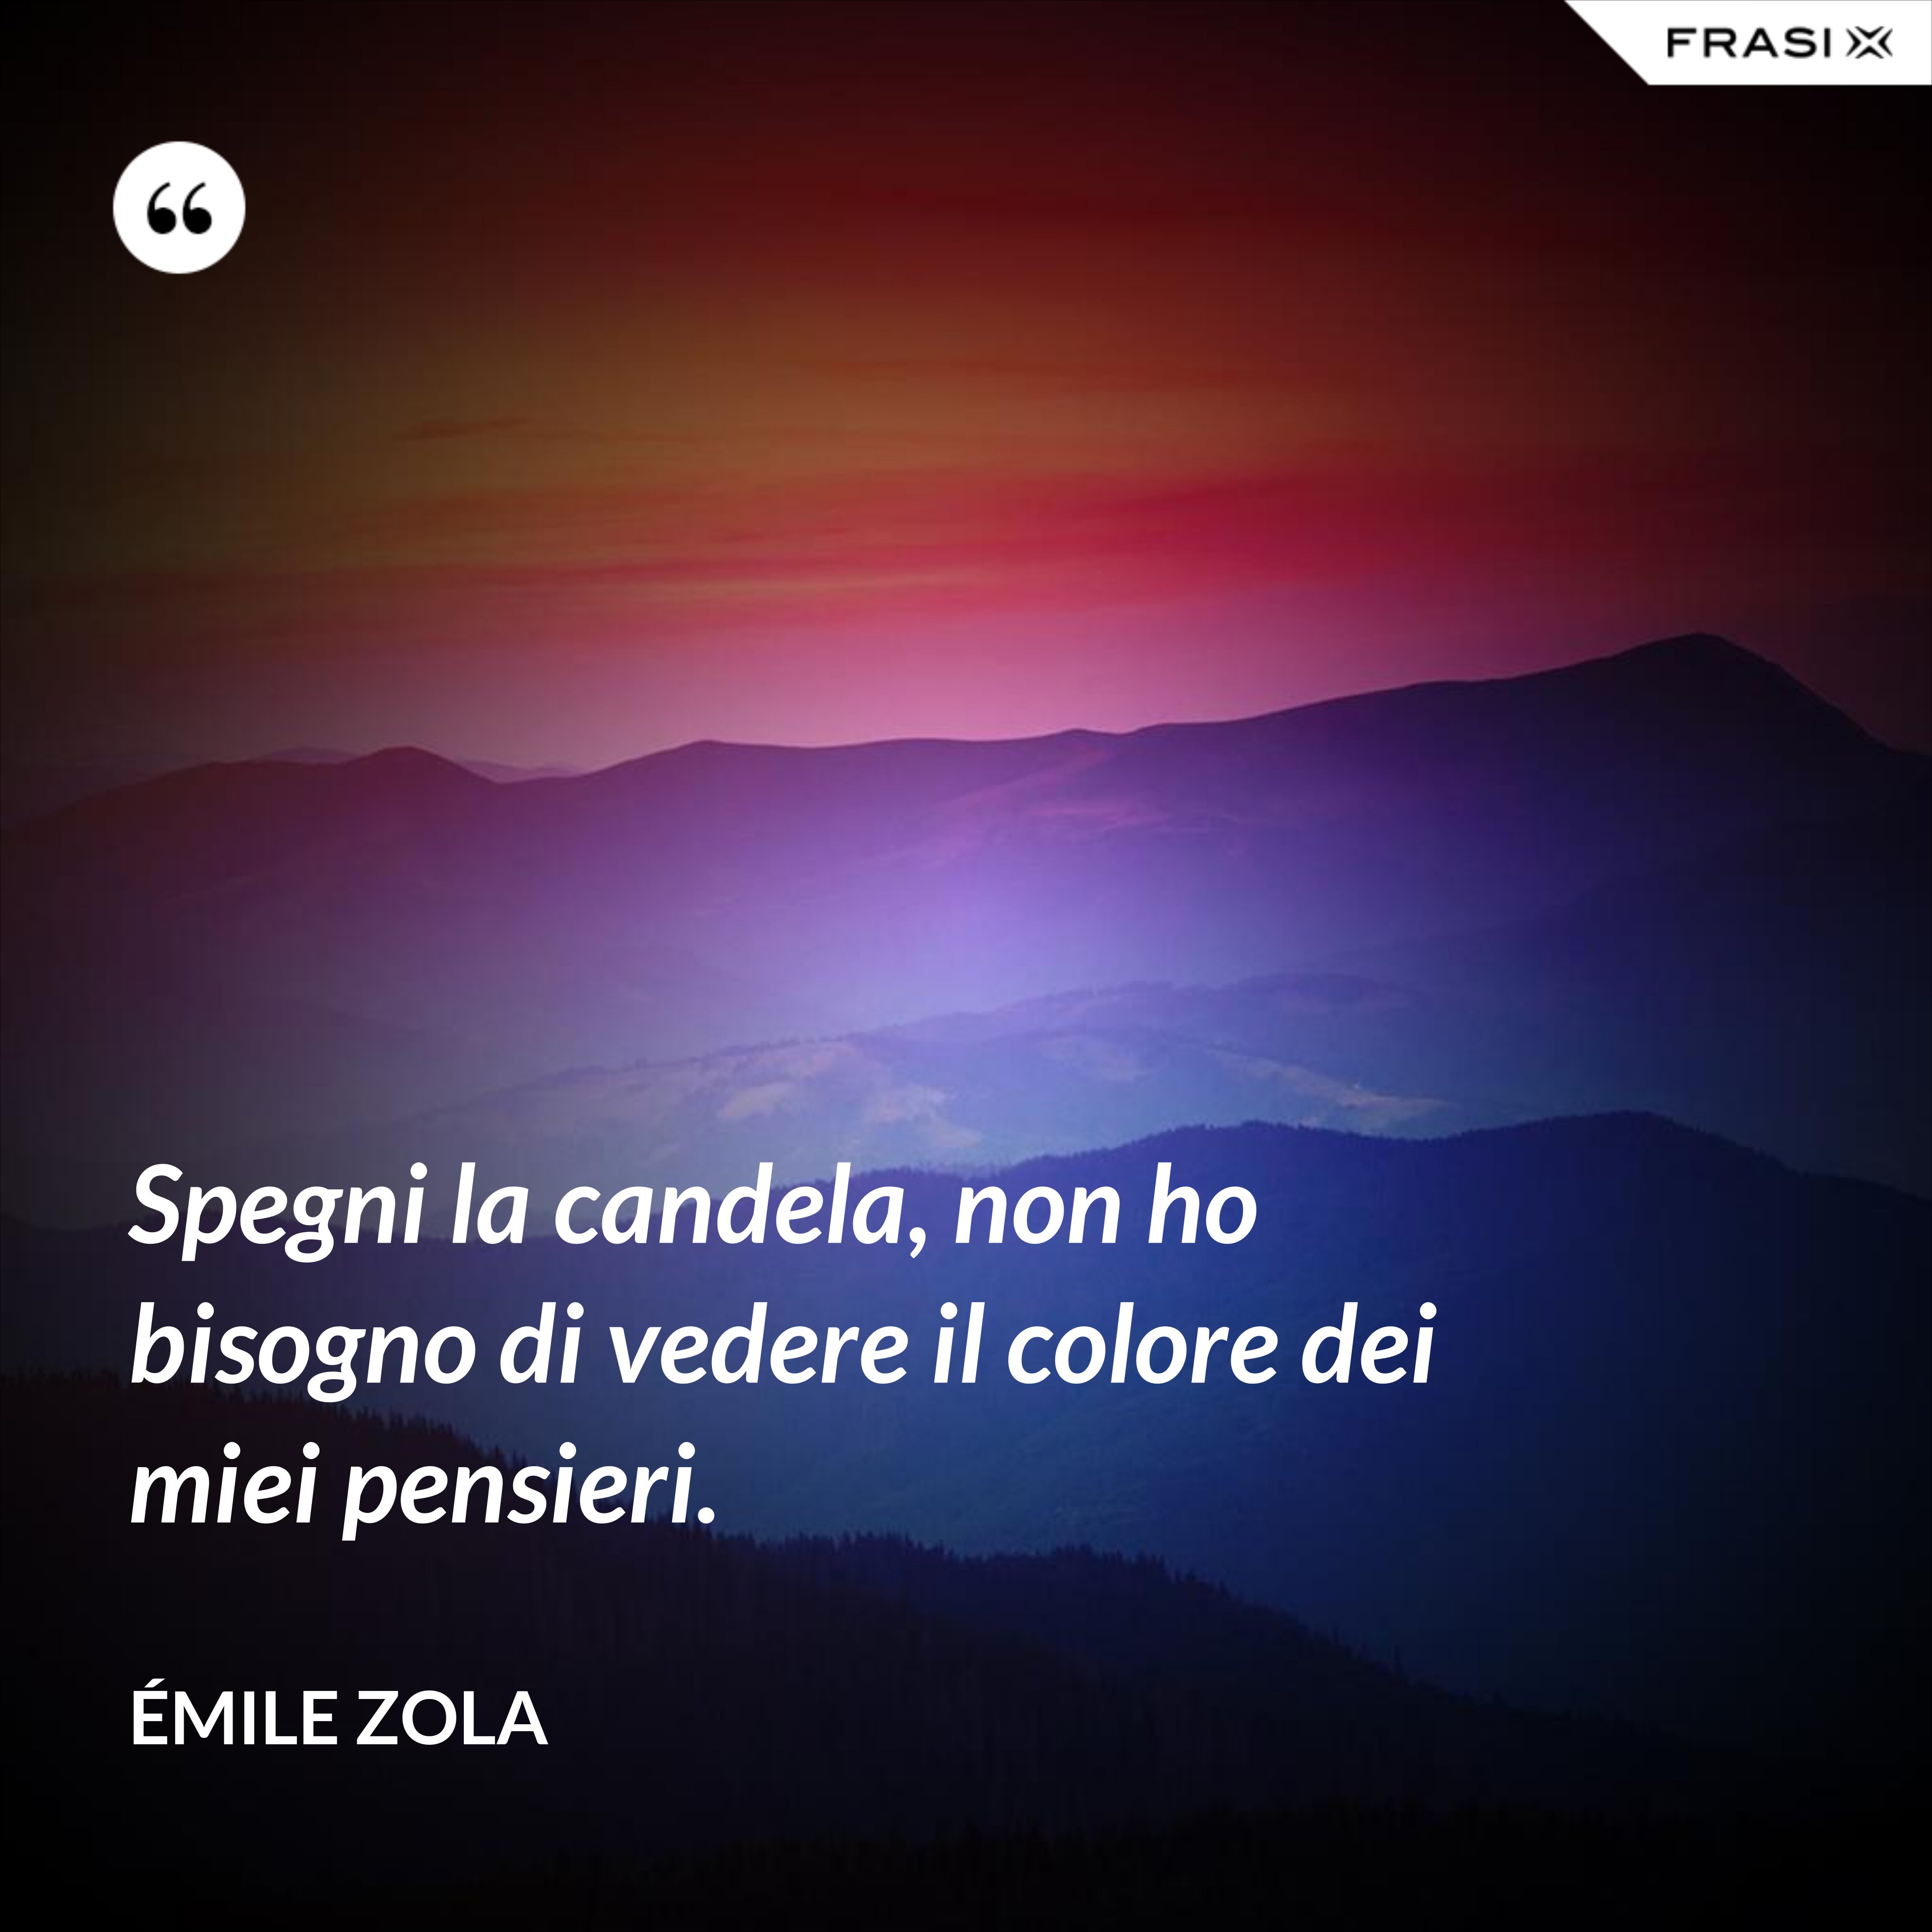 Spegni la candela, non ho bisogno di vedere il colore dei miei pensieri. - Émile Zola